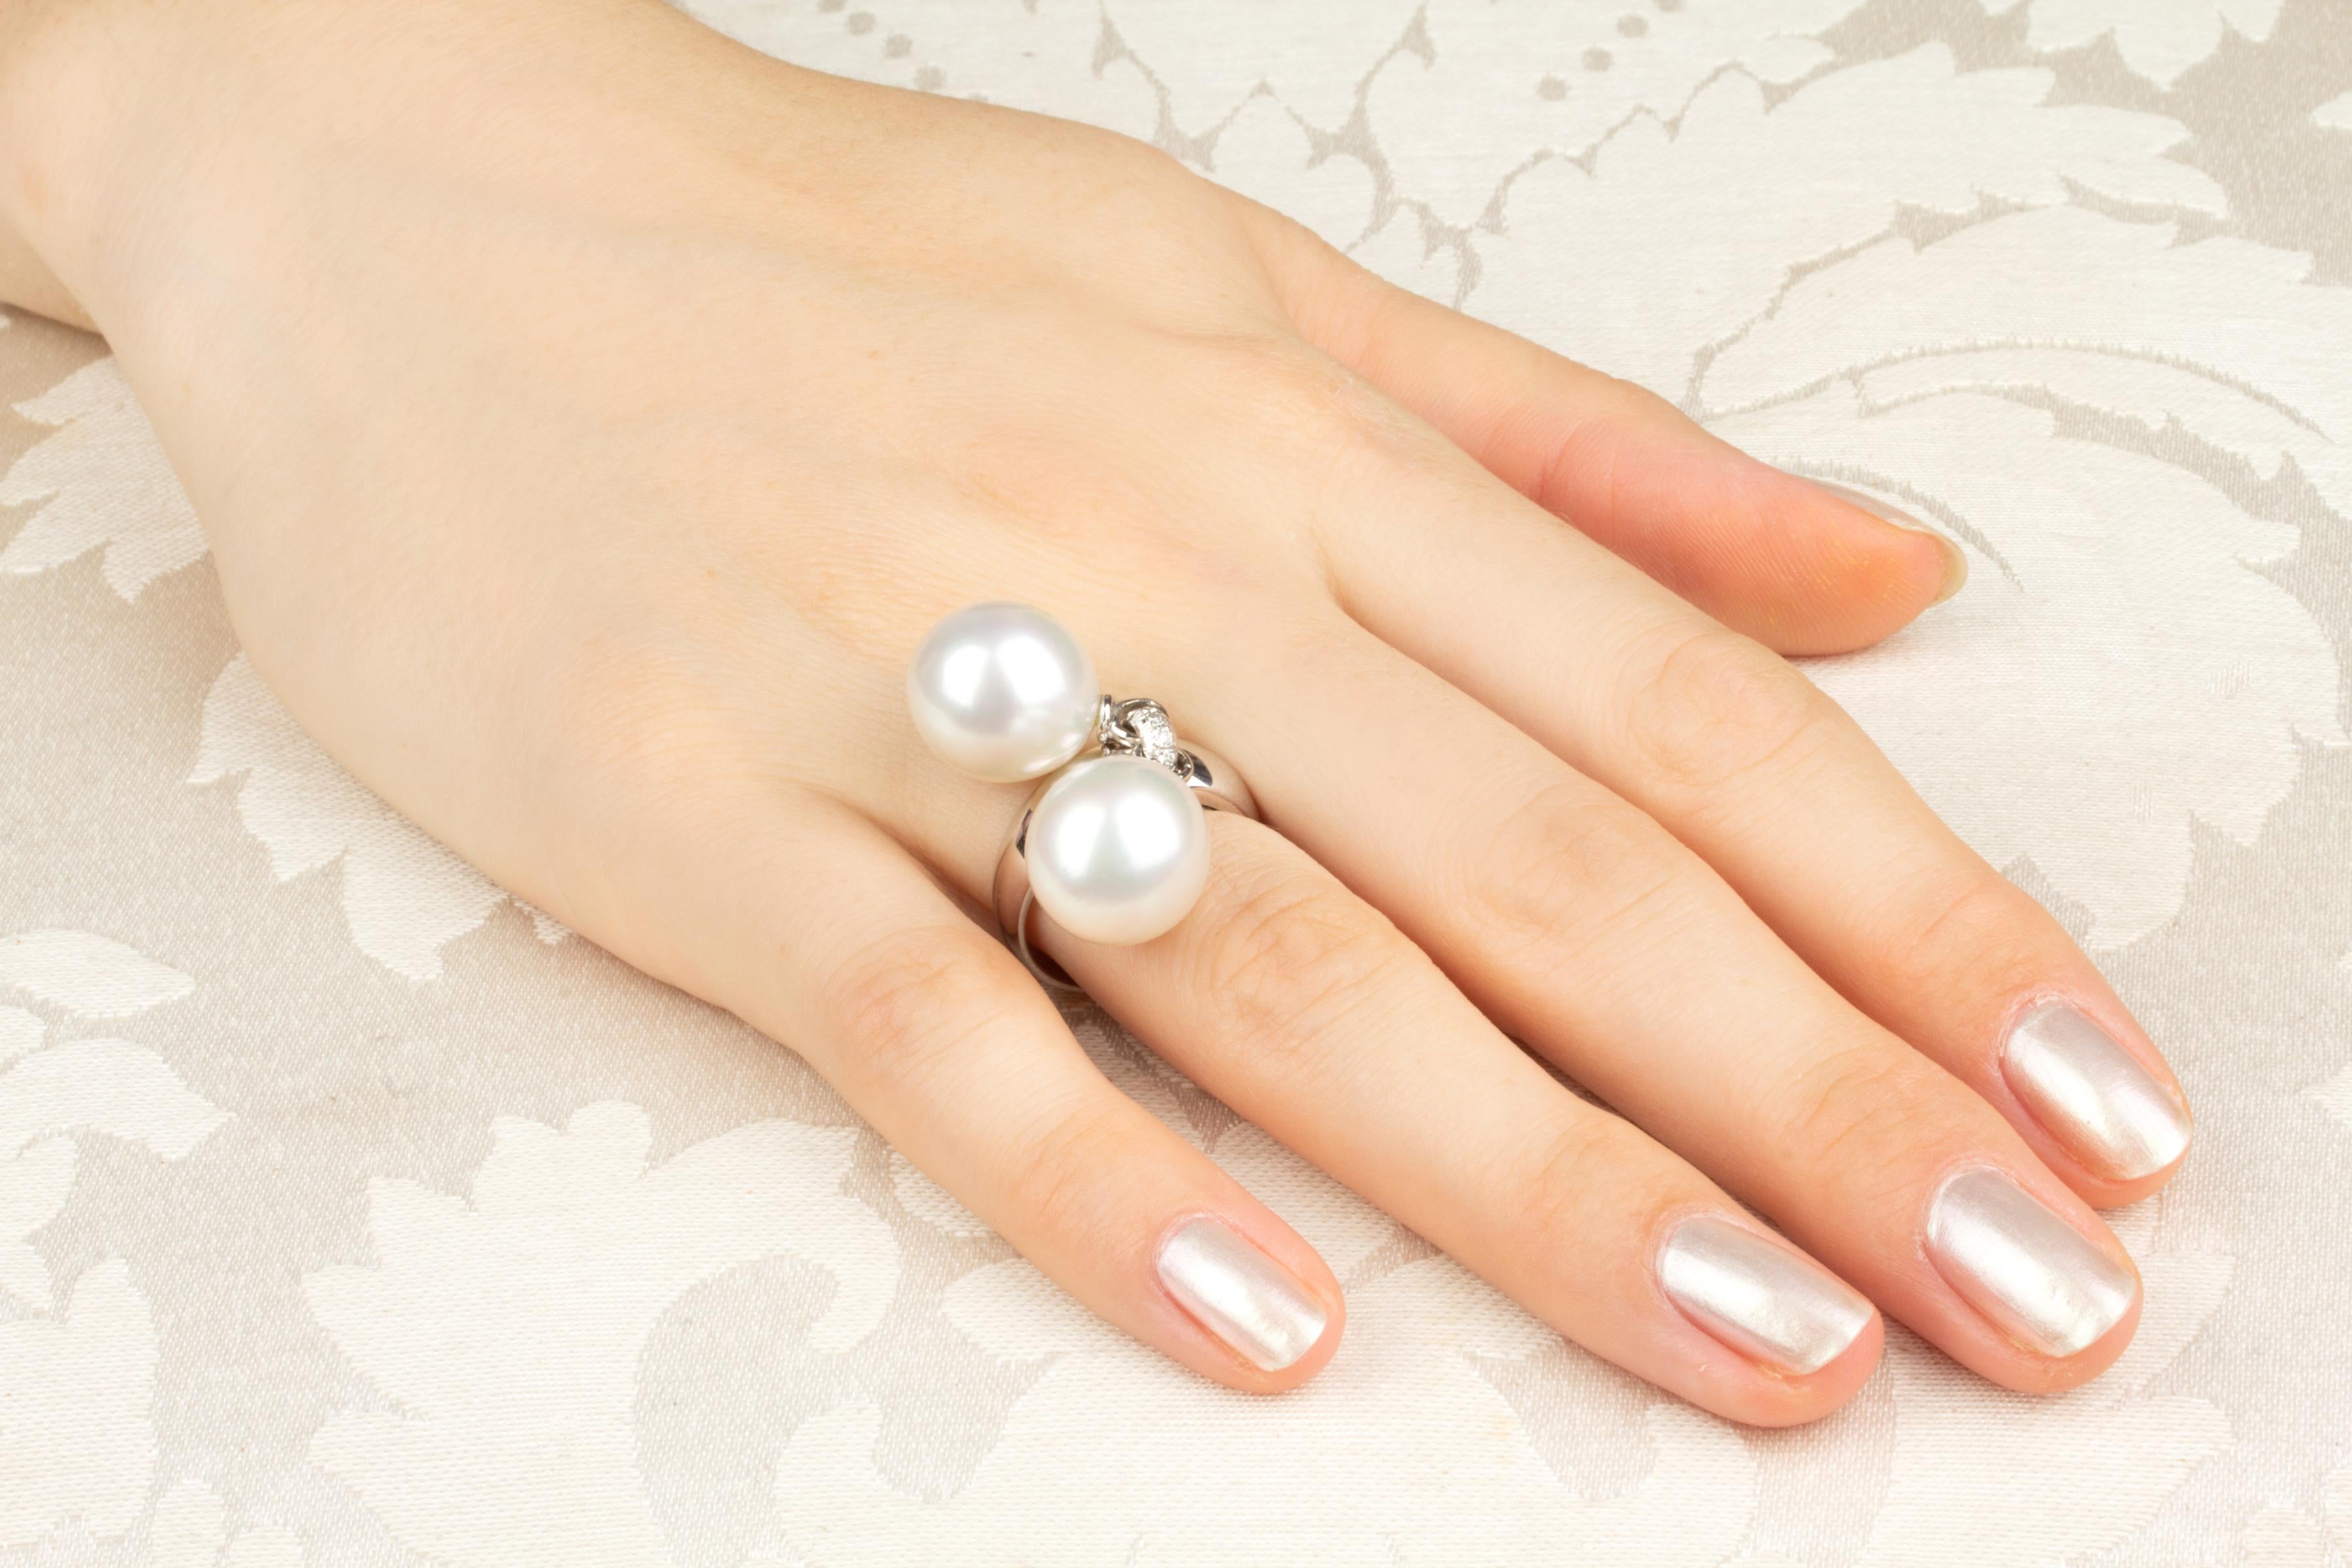 Dieser skurrile Ring aus Südseeperlen und Diamanten besteht aus zwei australischen Perlen mit einem Durchmesser von 13,5 mm. Die Perlen sind unbehandelt. Sie weisen ein feines Perlmutt auf und ihre natürliche Farbe und ihr Glanz wurden in keiner